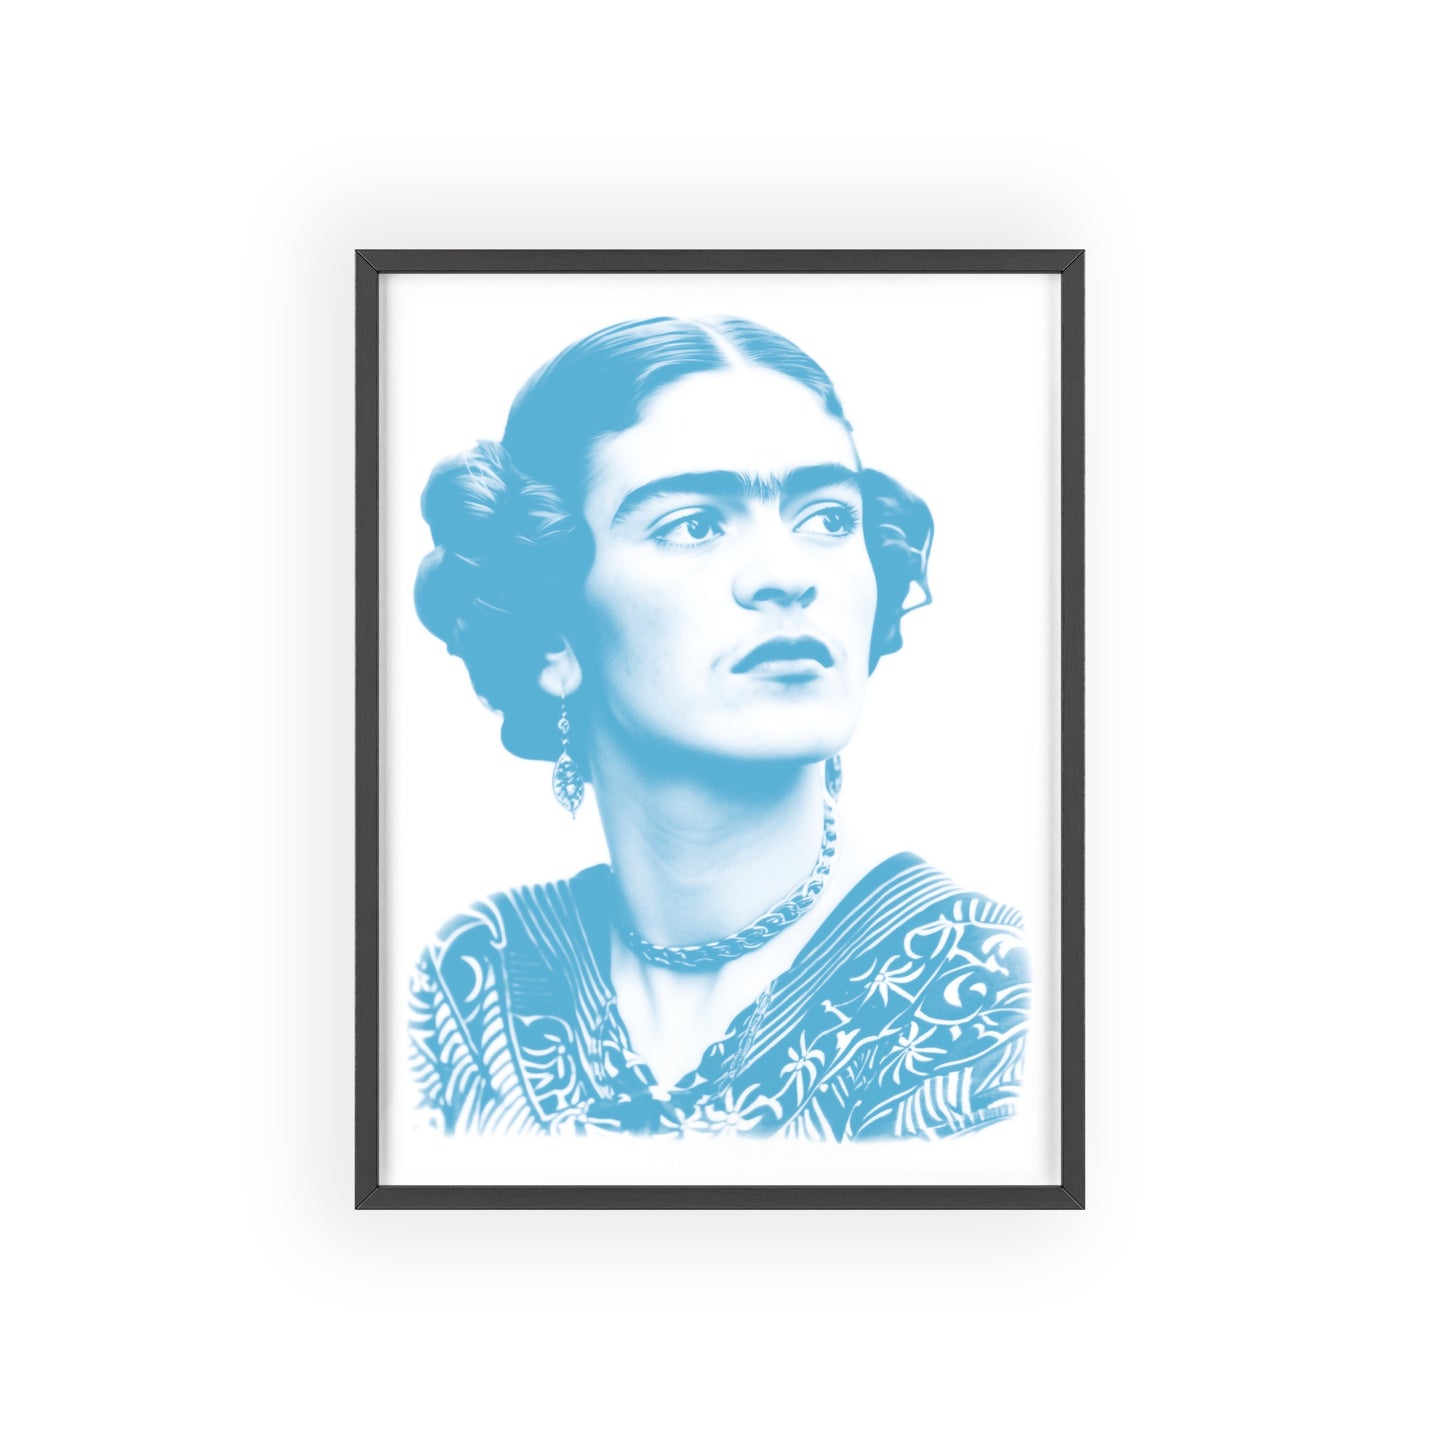 Frida in Cyan - Portrait